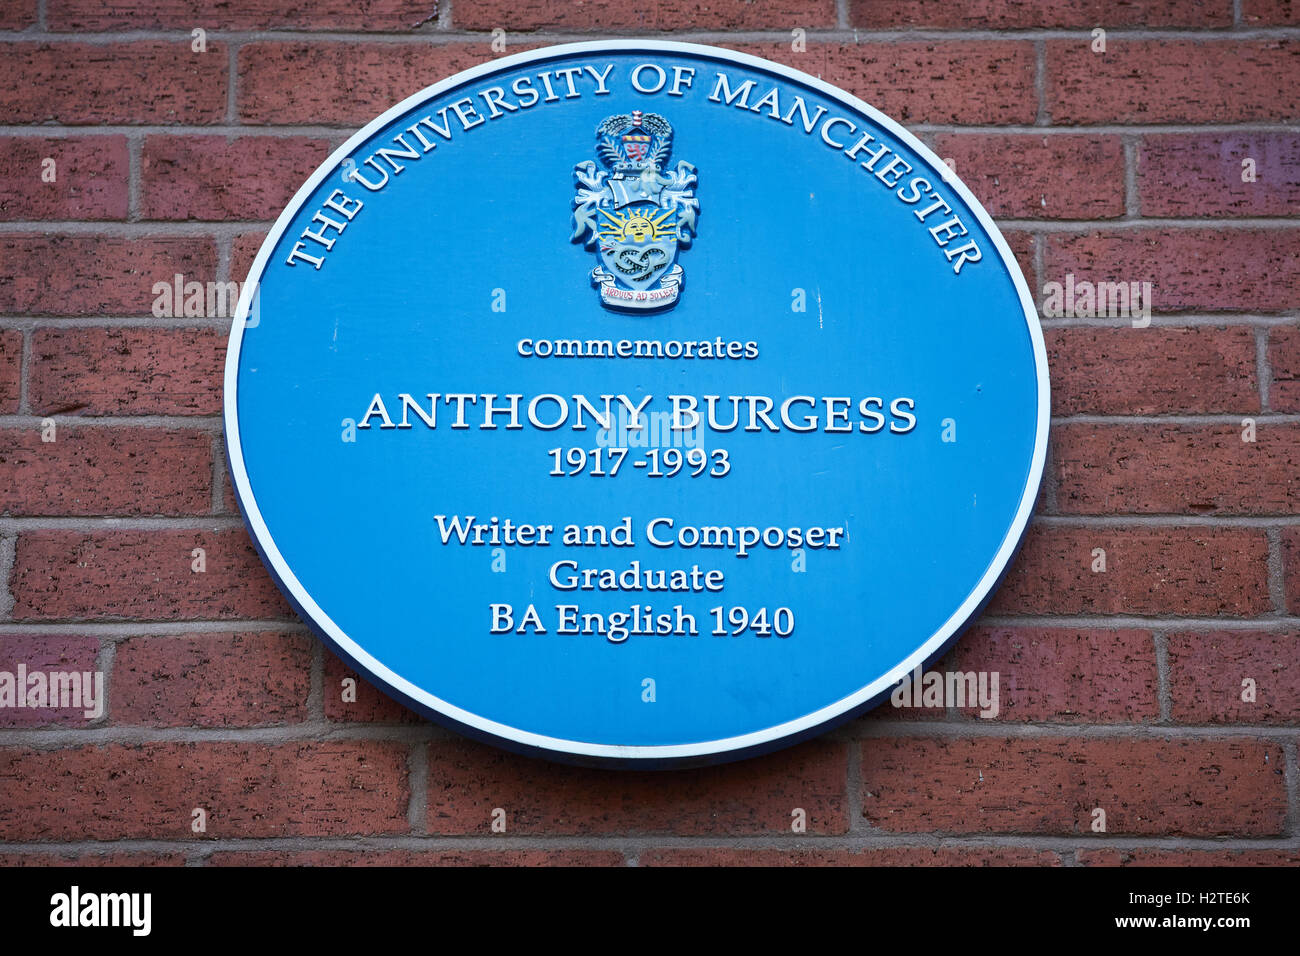 Anthony Burgess bleu plaque Manchester University auteur compositeur mancunian commémore la commémoration historique de deuxième cycle histo Banque D'Images